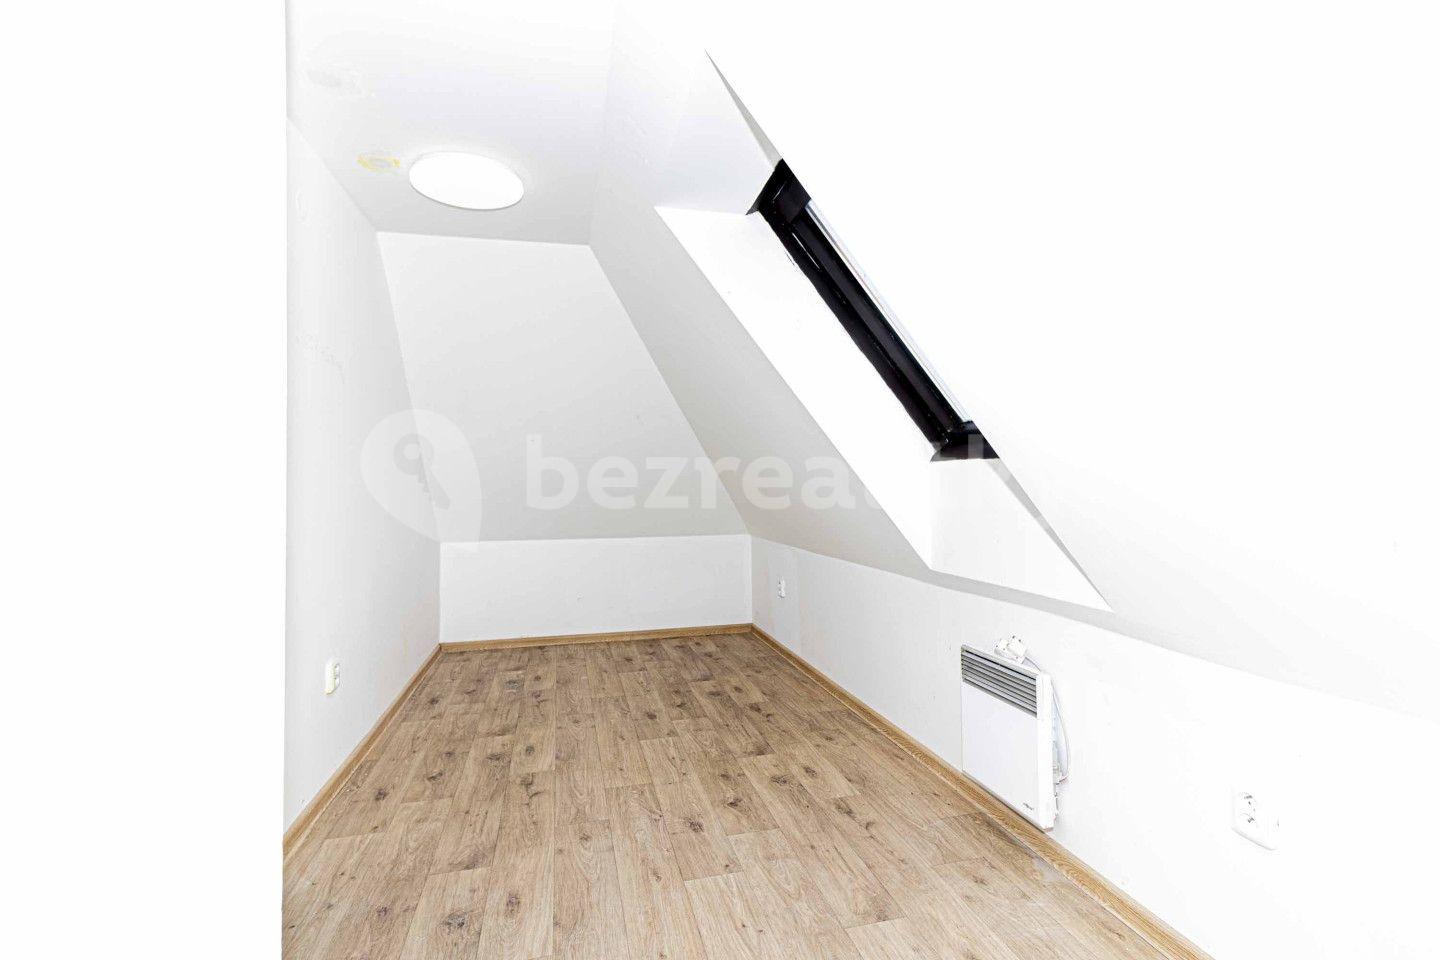 3 bedroom flat for sale, 49 m², Dušníky, Ústecký Region